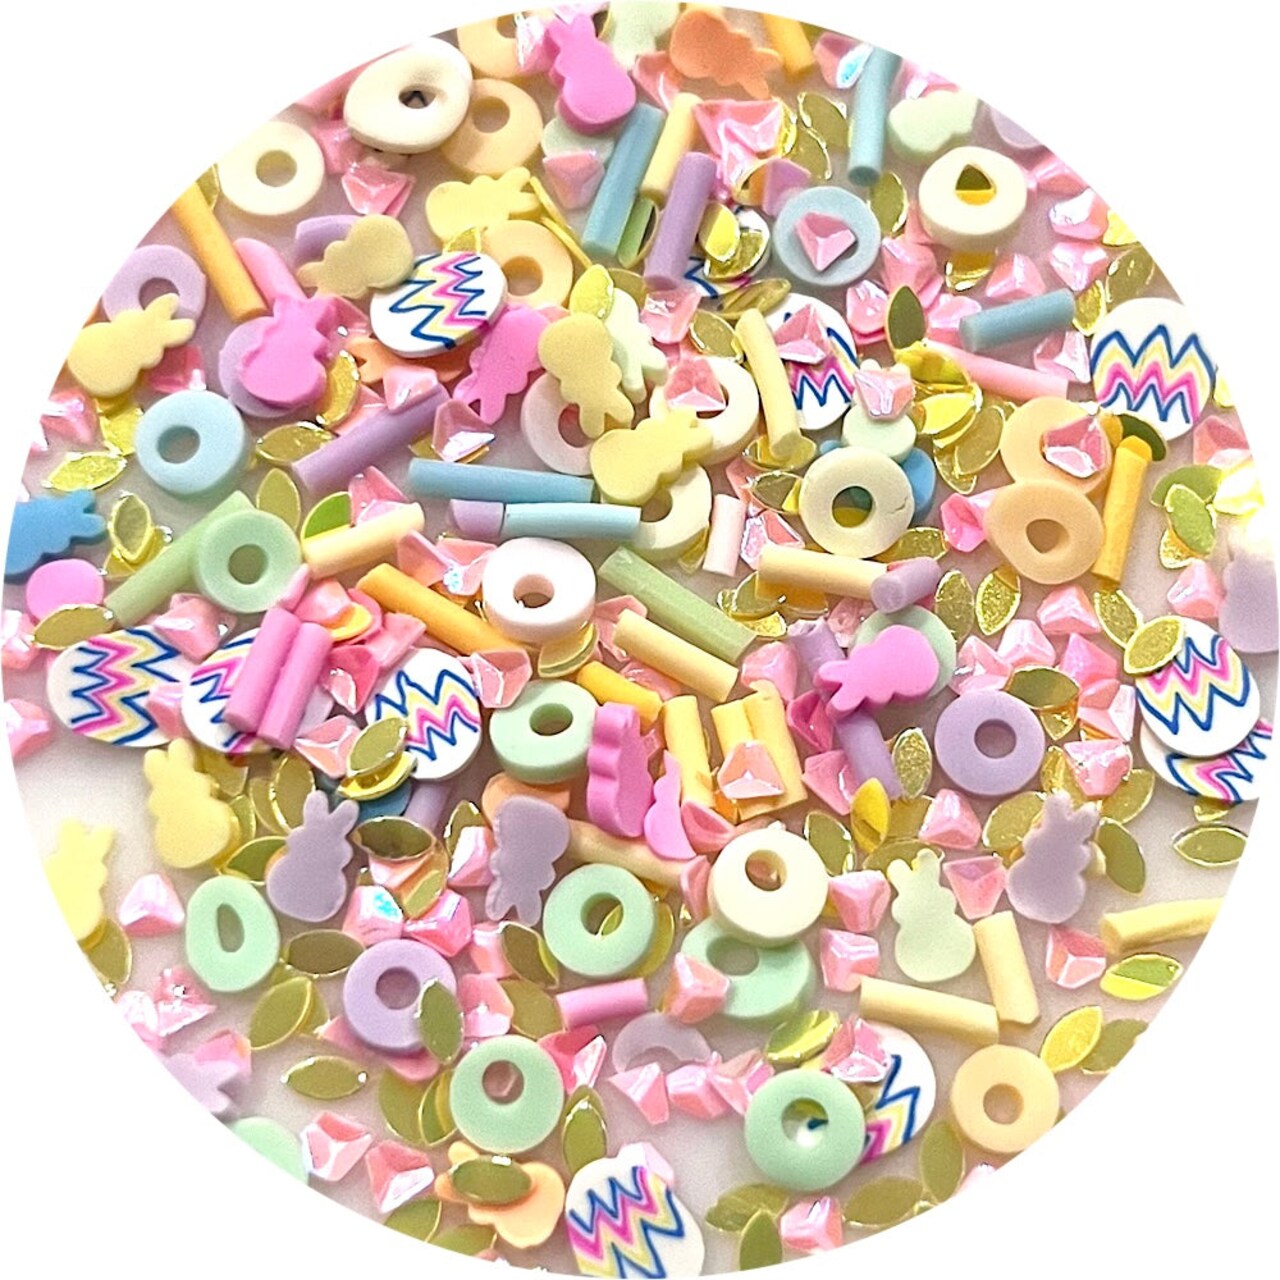 Fake Sprinkles - Easter Sprinkles by Glitter Heart Co.™